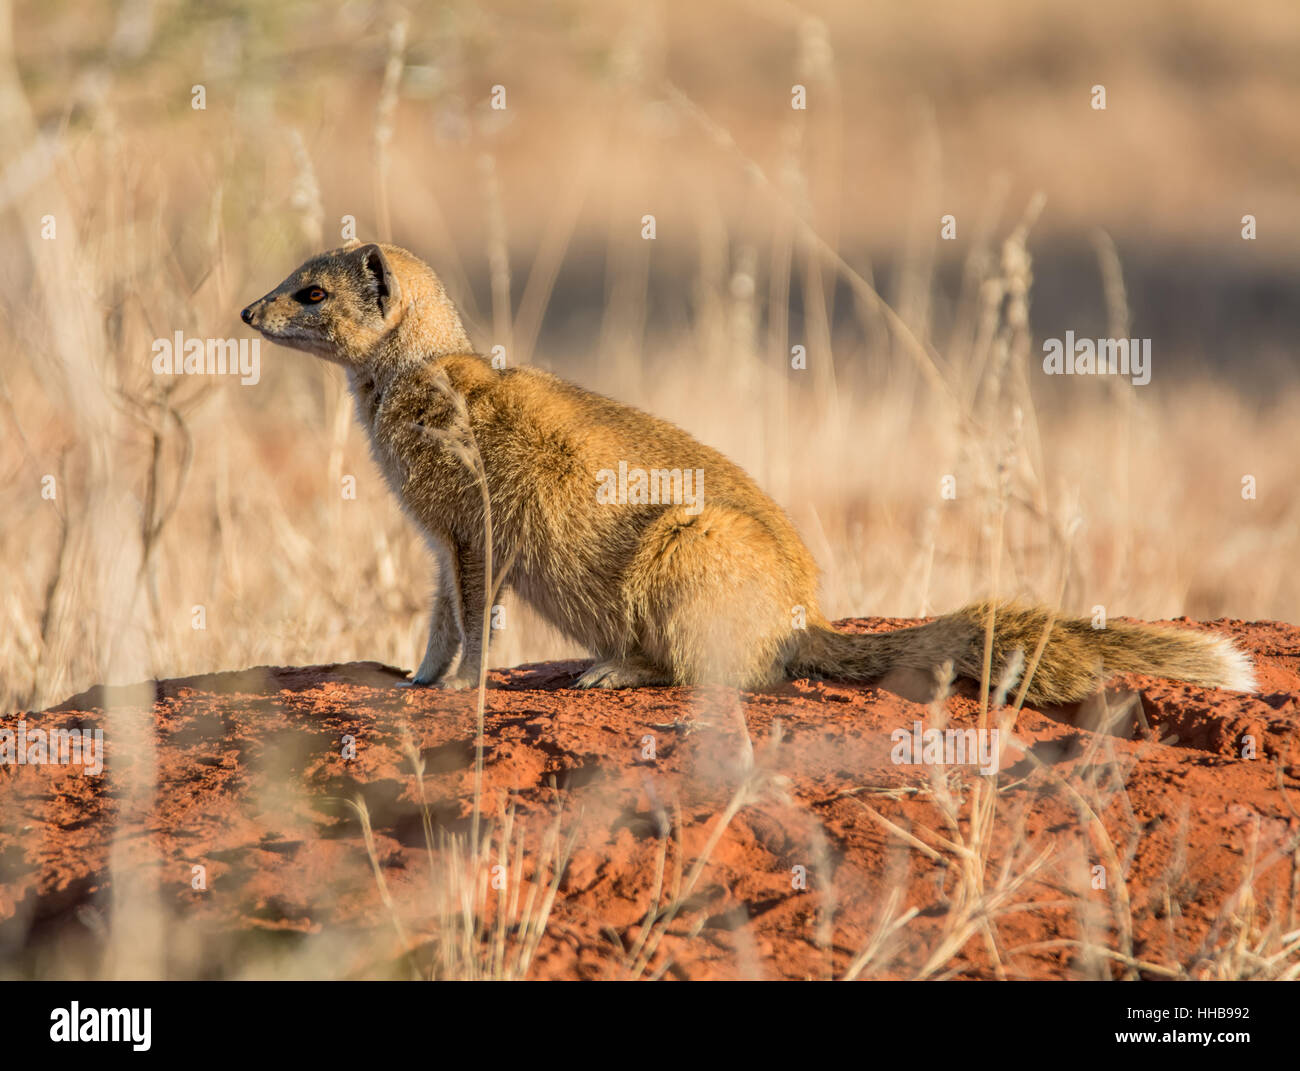 Ritratto di una mangusta su un tumulo termite in Africa australe Foto Stock